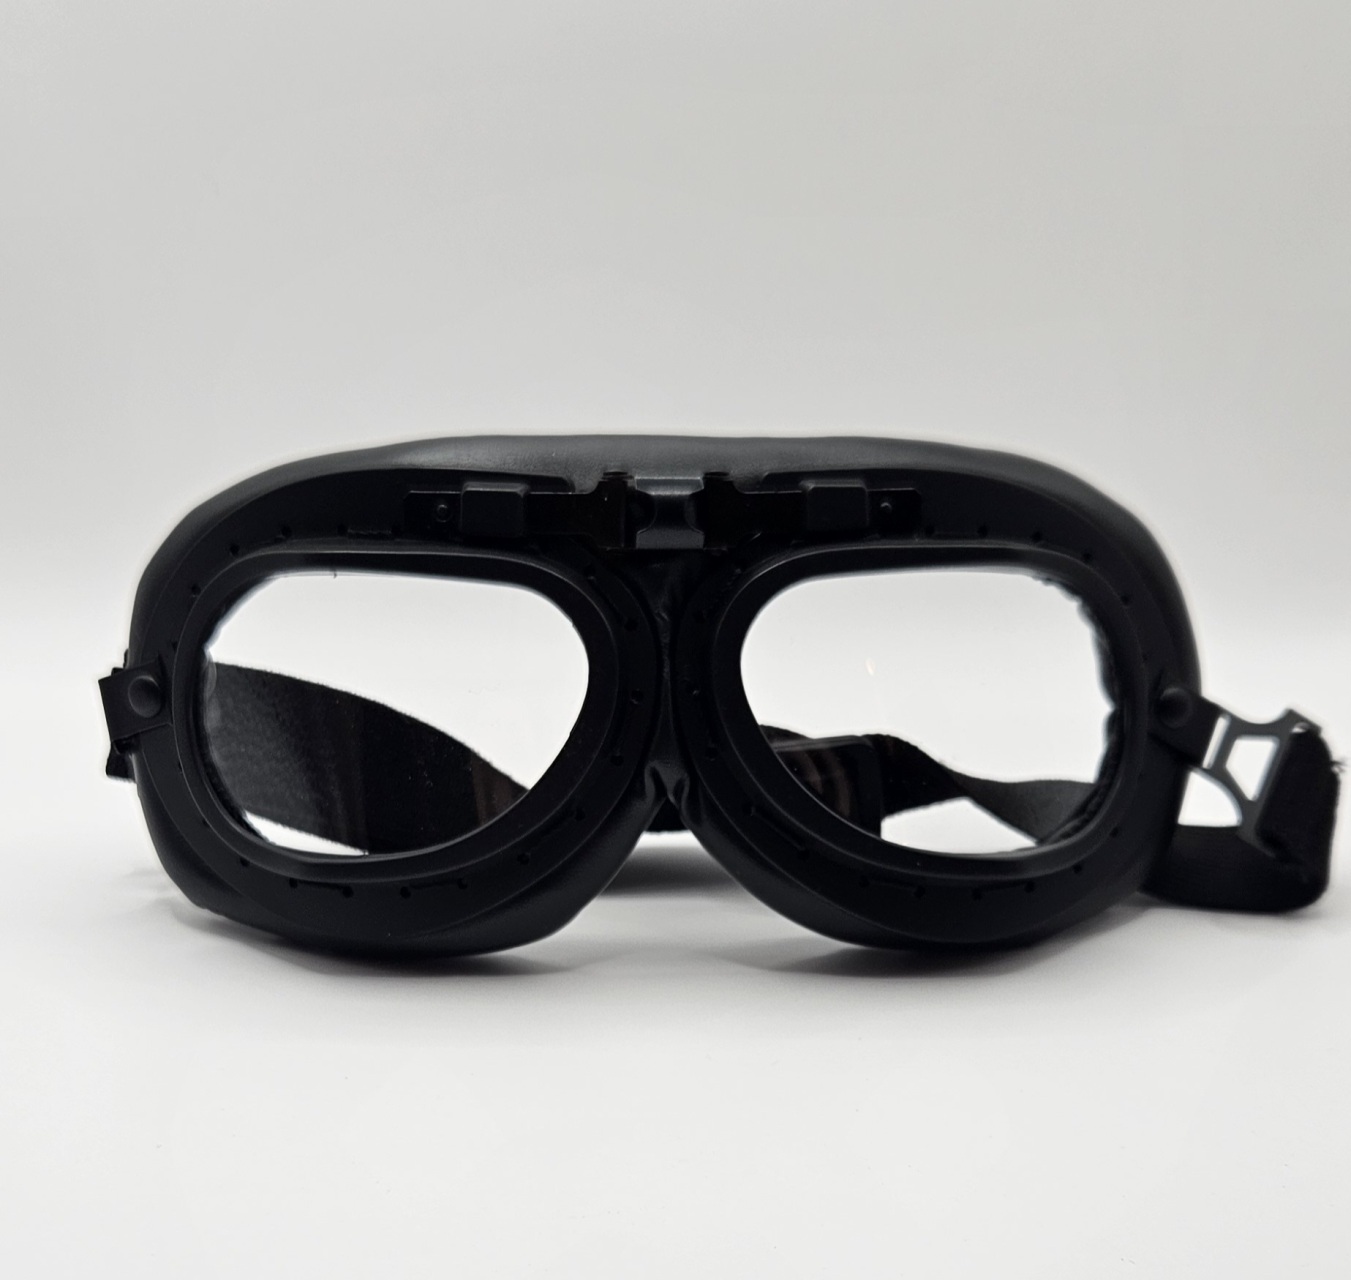 Transparante motorfiets bril voor optimale zichtbaarheid en bescherming tijdens het rijden